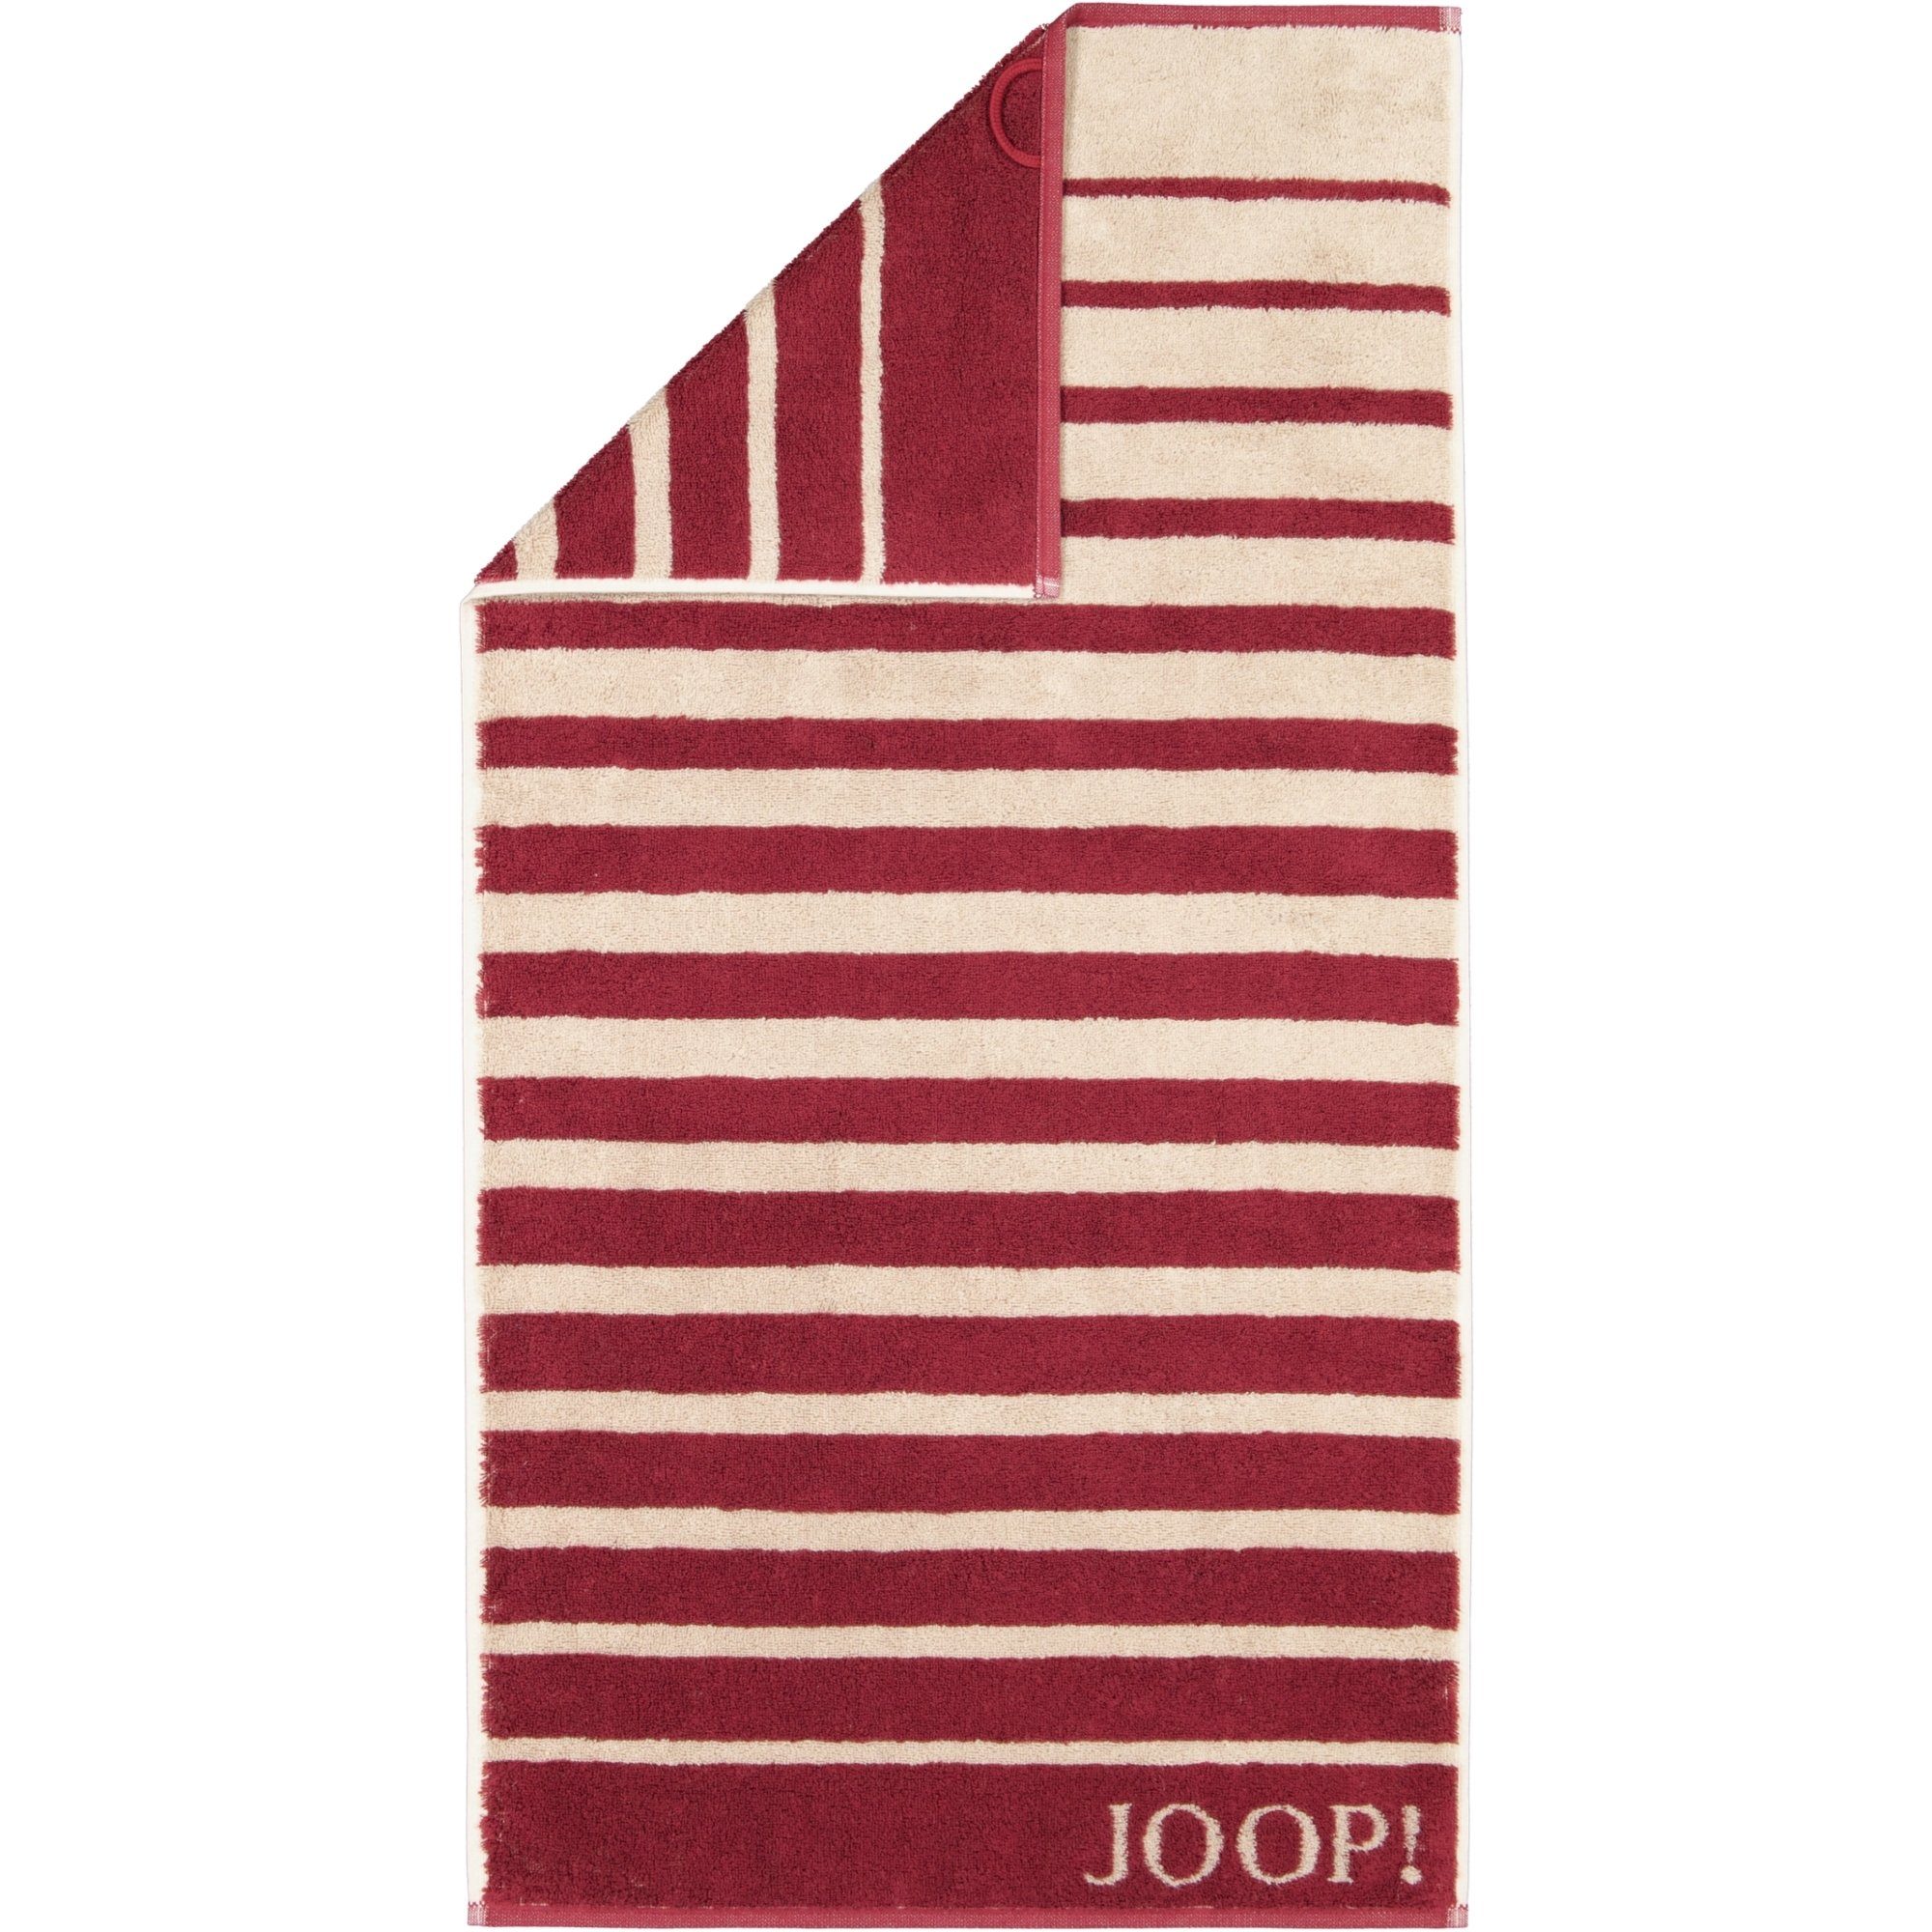 Joop! Handtücher Select Shade 1694, 100% Baumwolle rouge